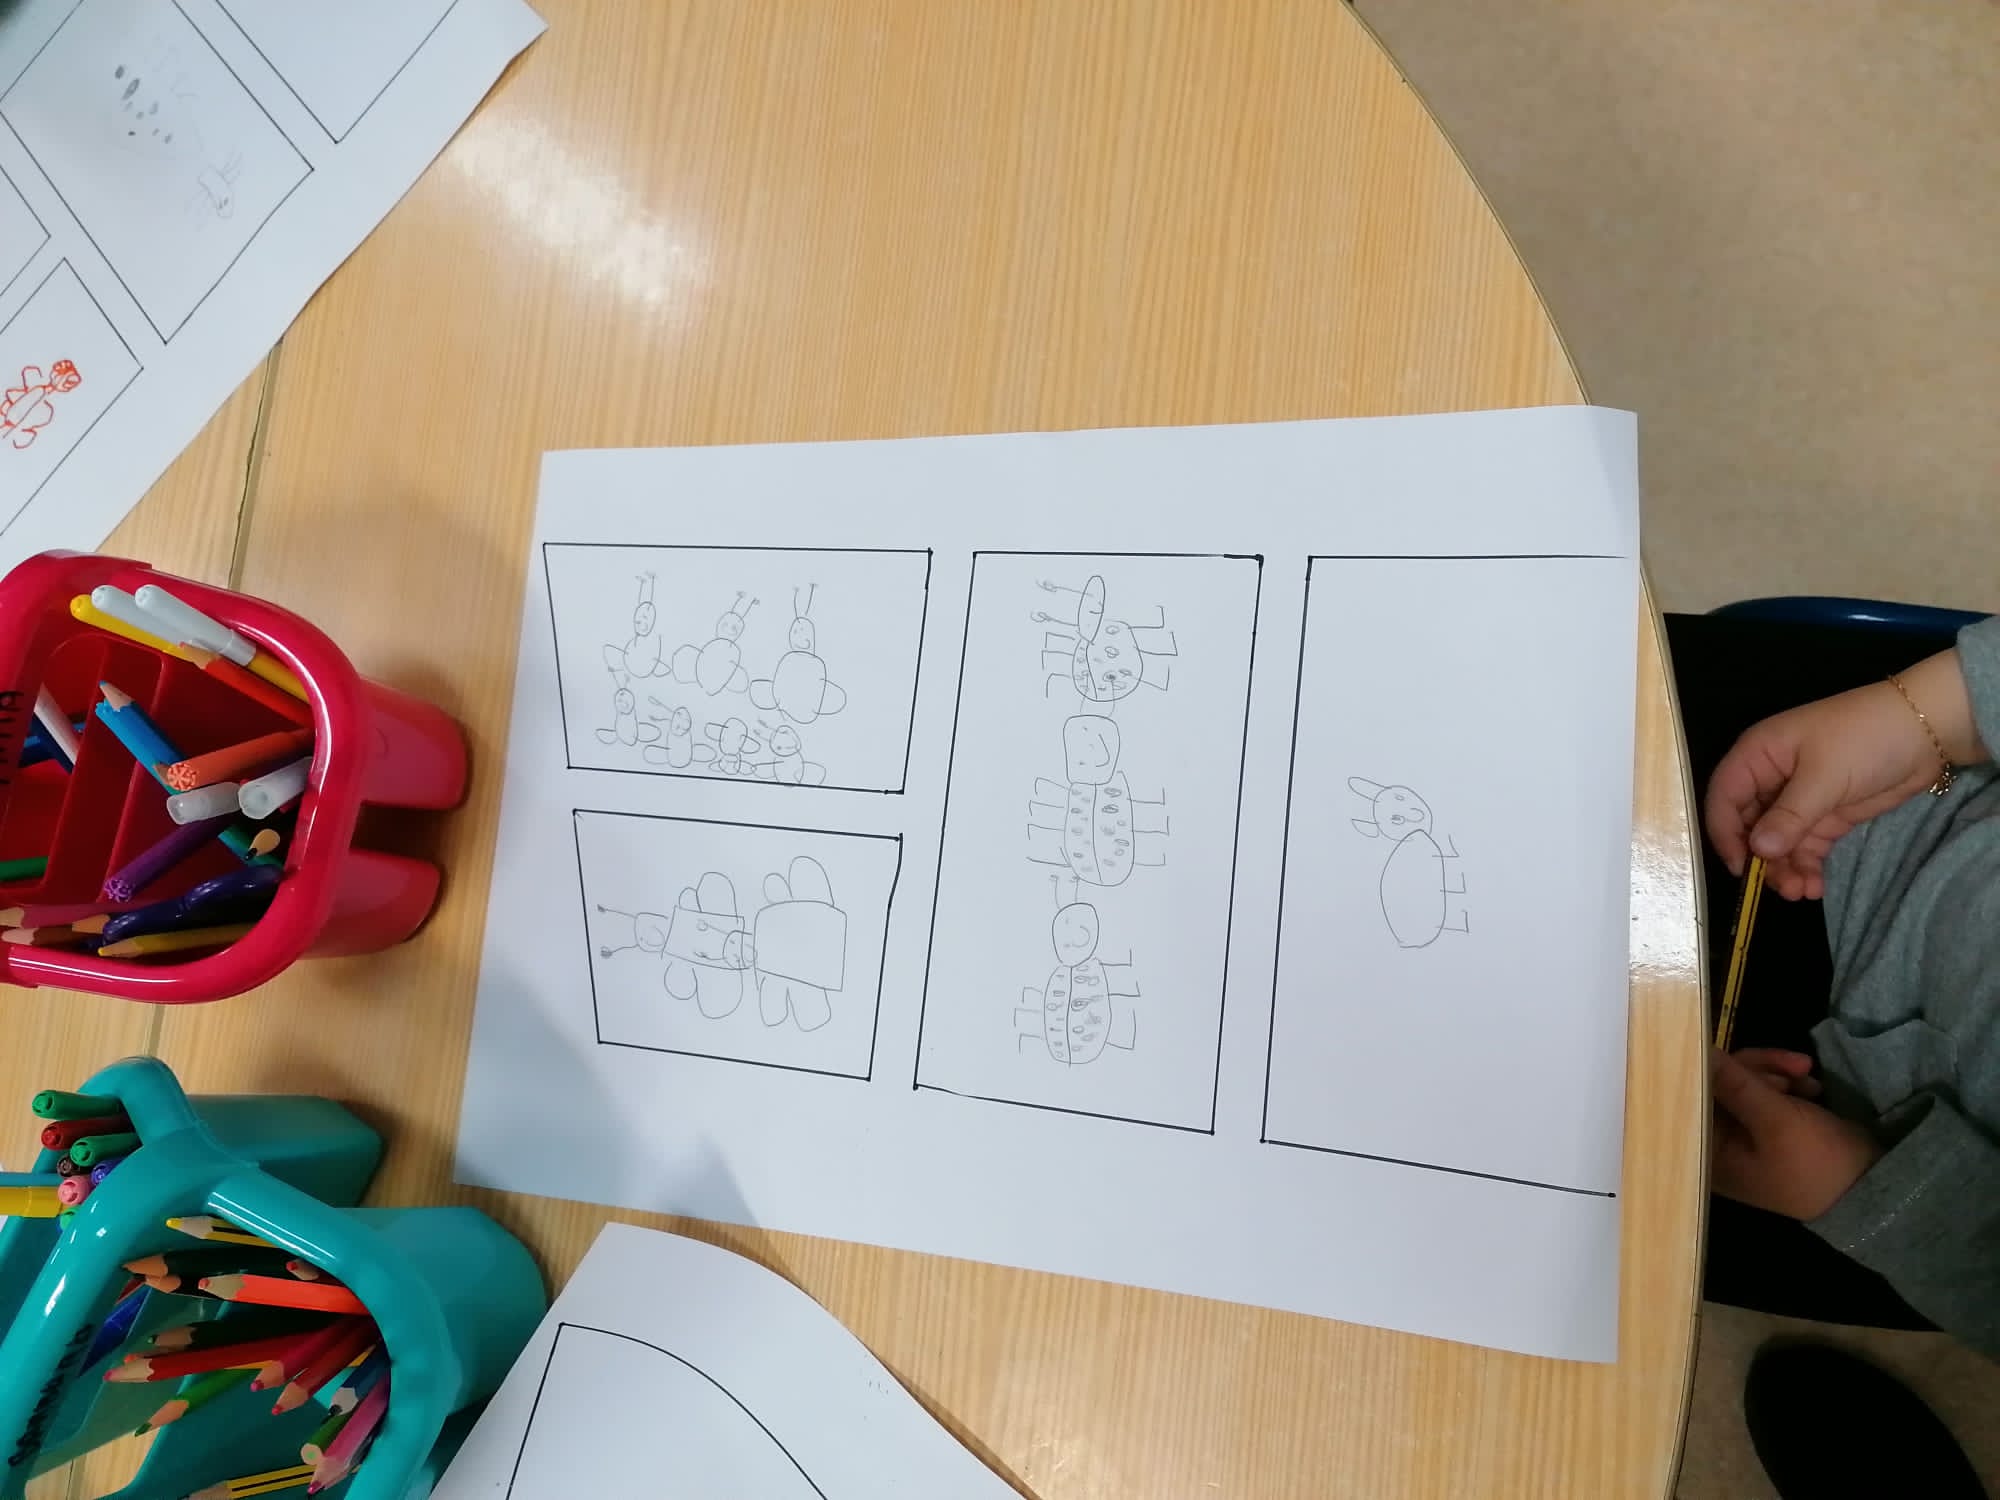 Desenhar a joaninha após a explicação na aula.